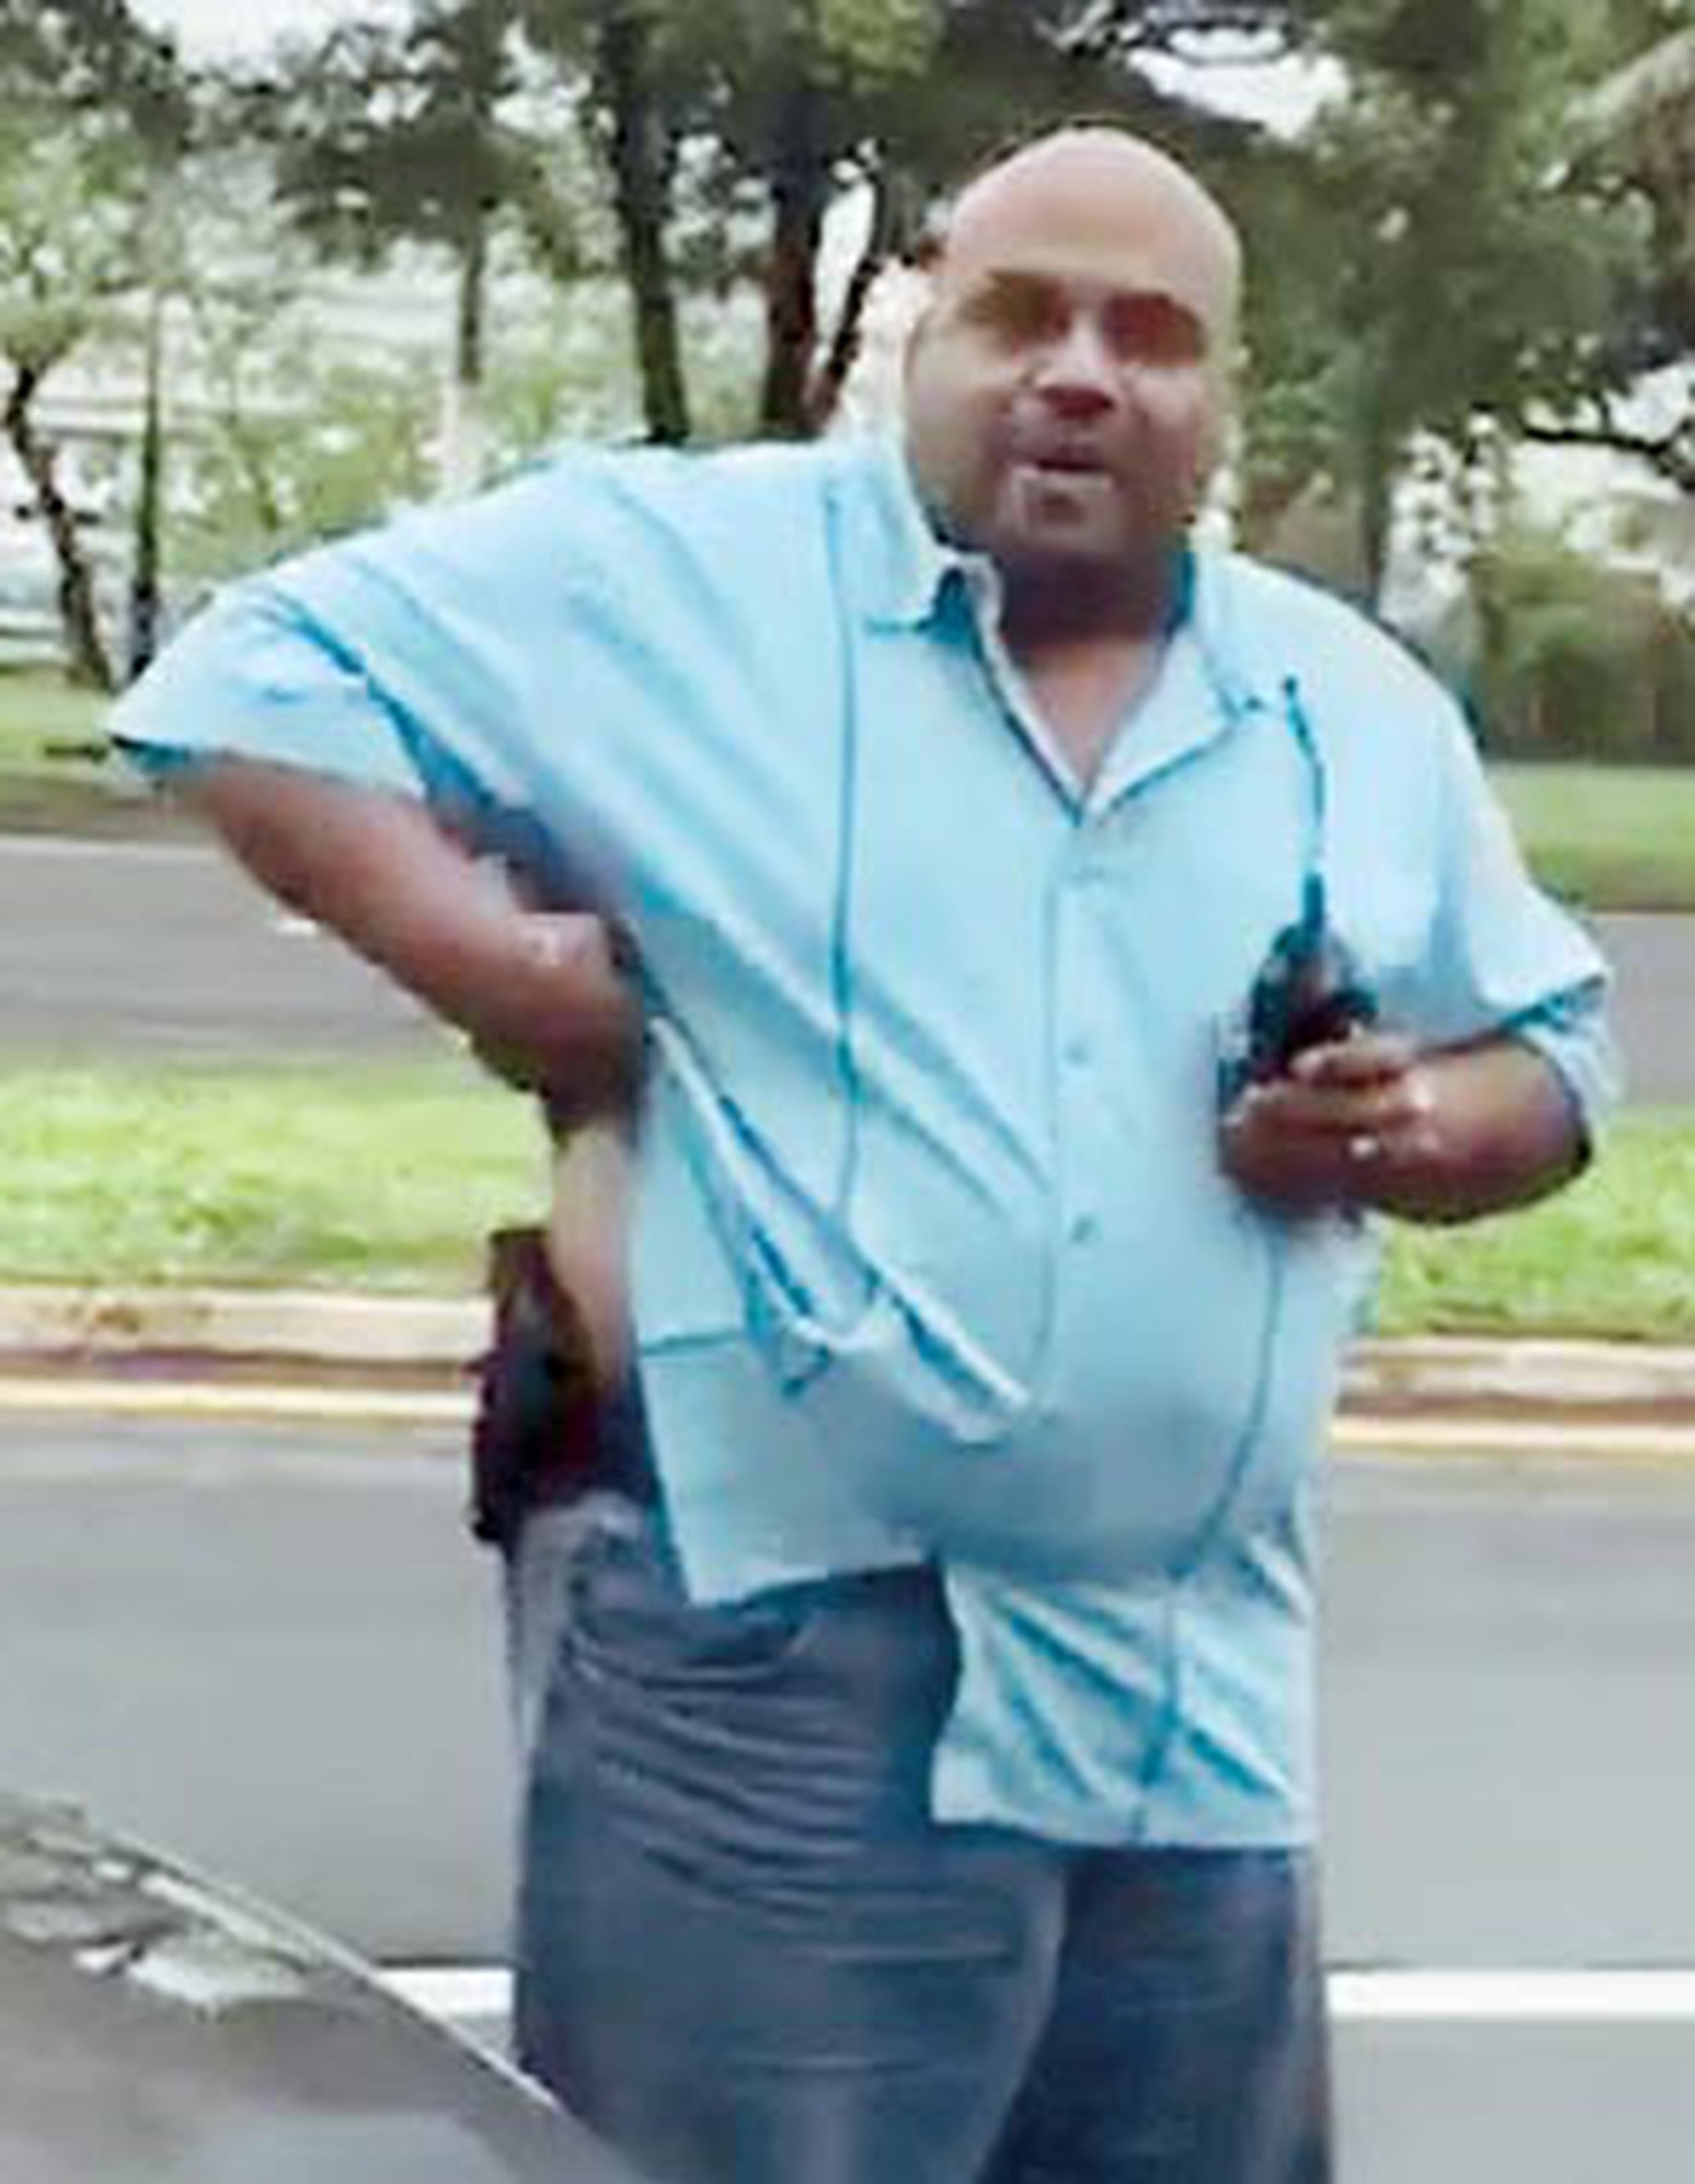 El policía retirado, José Perelló, en la foto con un arma en la cintura, dijo que es injusto que un pasajero solicite un servicio y sea amenazado. (Captura/Facebook)